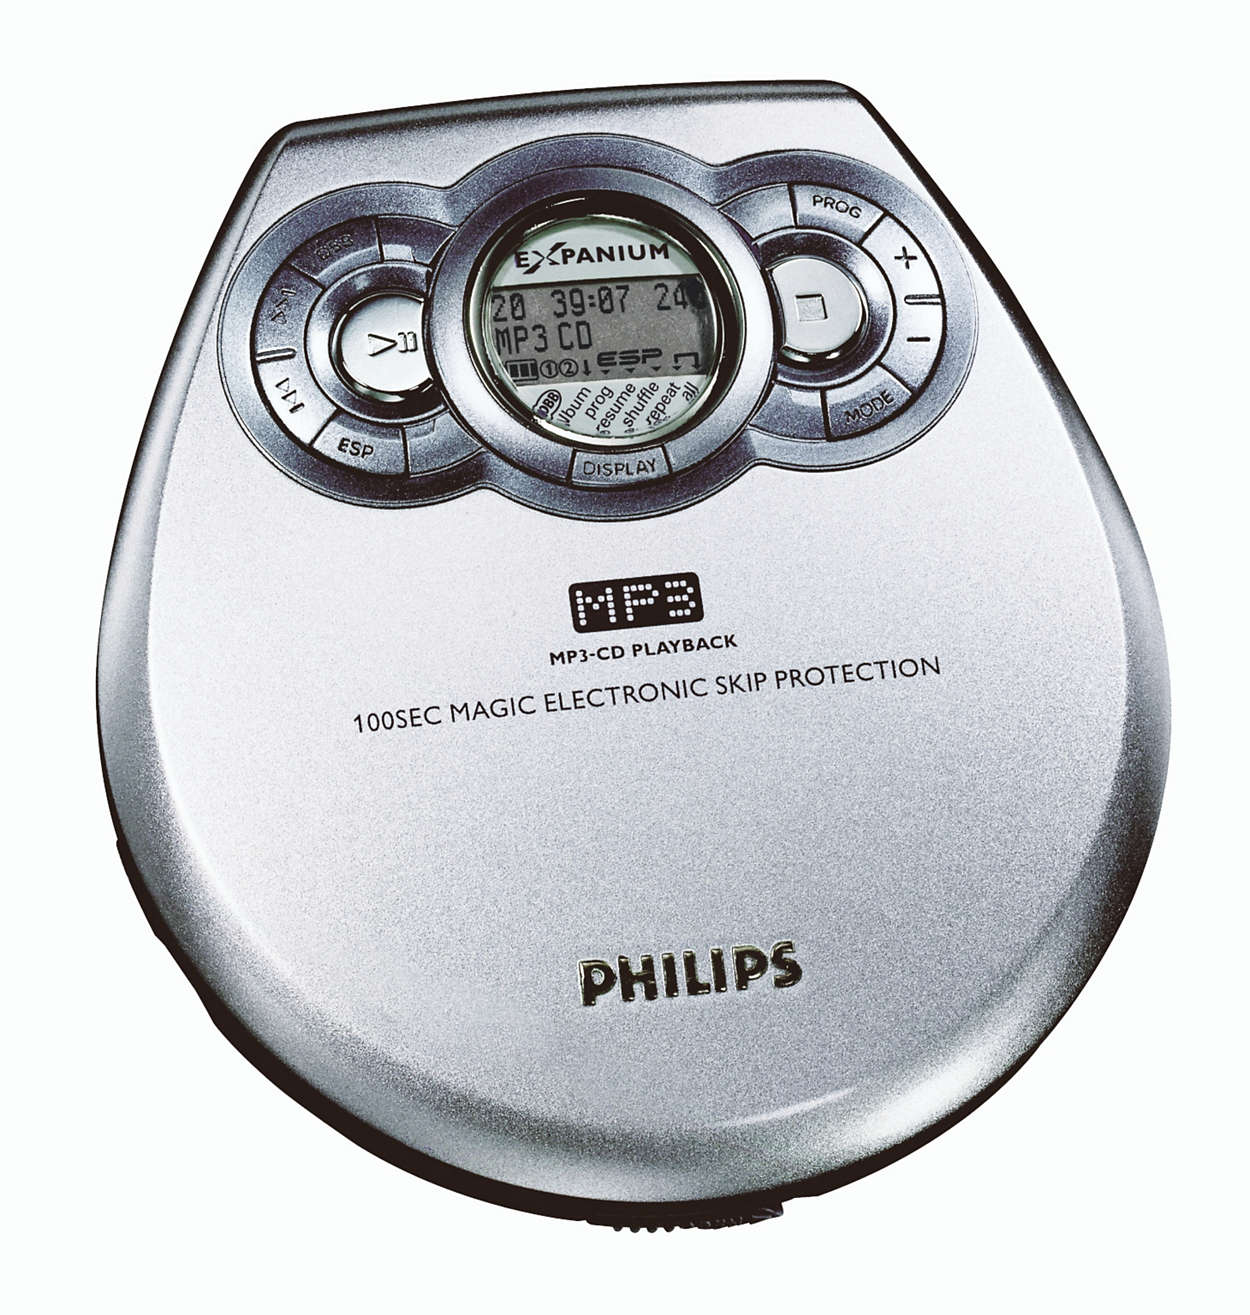 Проигрыватель филипс. Портативный CD плеер Philips Exp. Плеер Philips Expanium exp3361. CD mp3 плеер Philips Expanium. CD mp3 плеер Philips 2005.